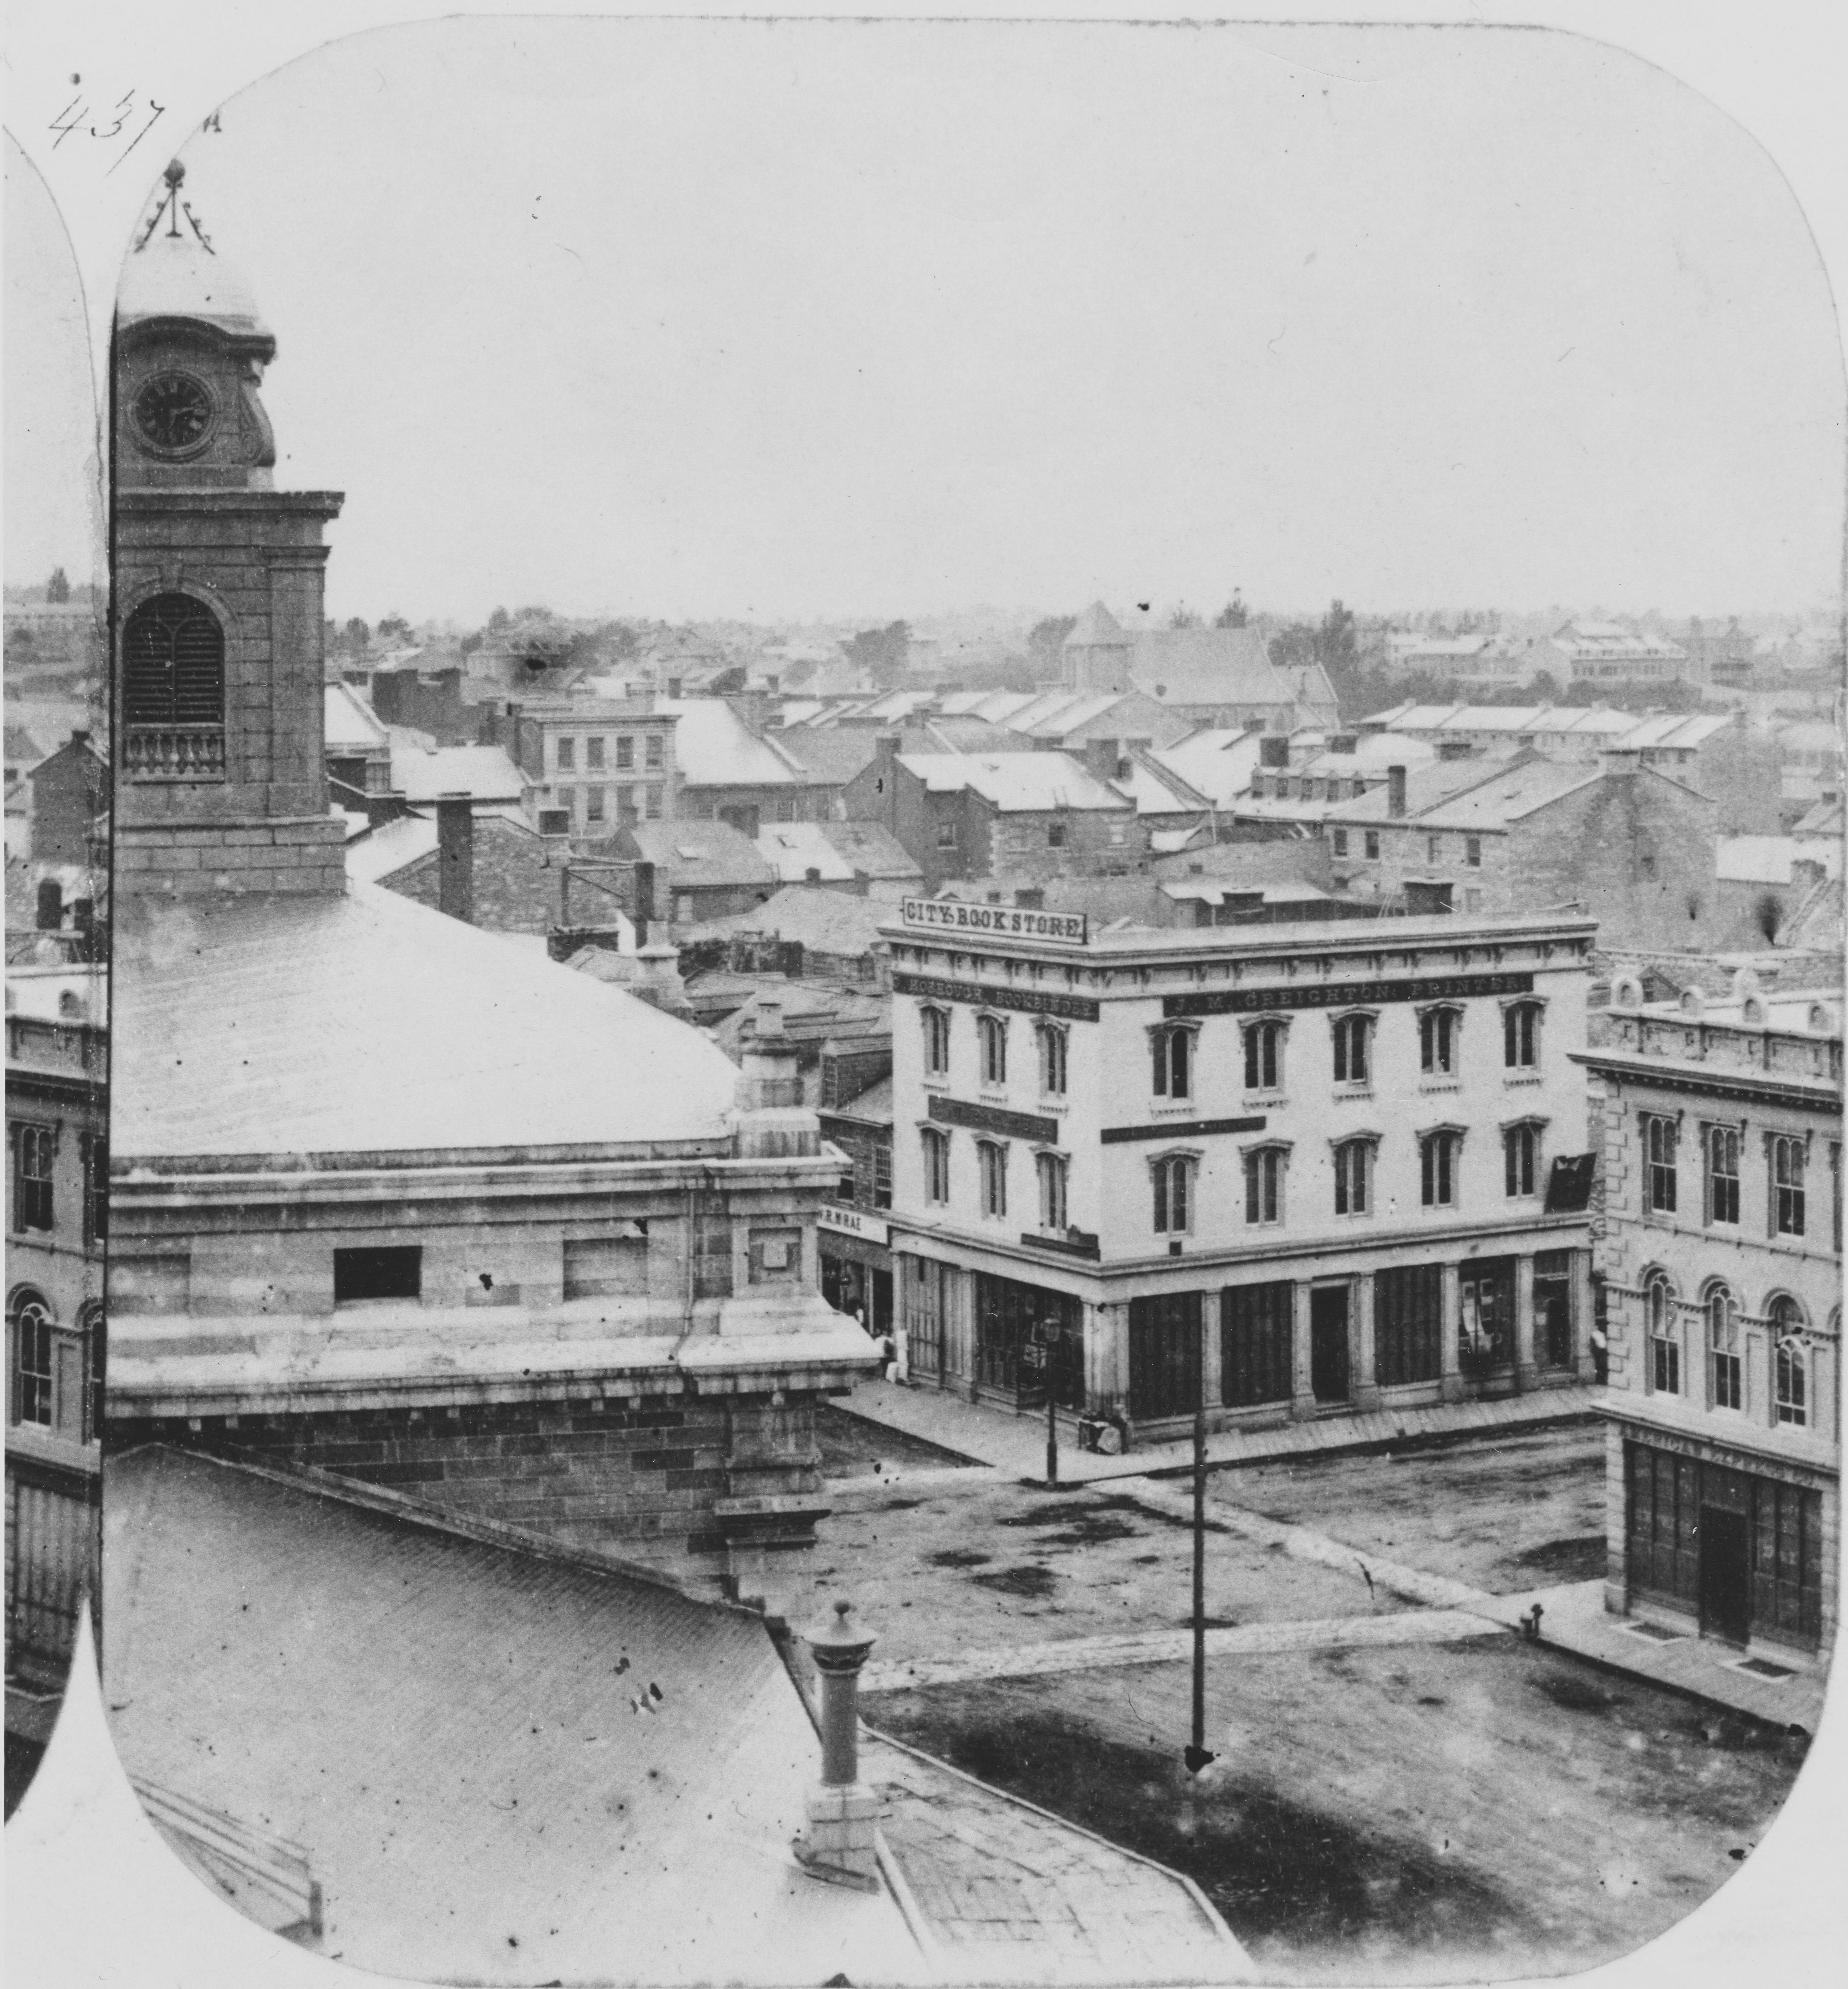  Photographie de rues de Kingston dans les années 1860 avec des routes, des trottoirs et un certain nombre de bâtiments